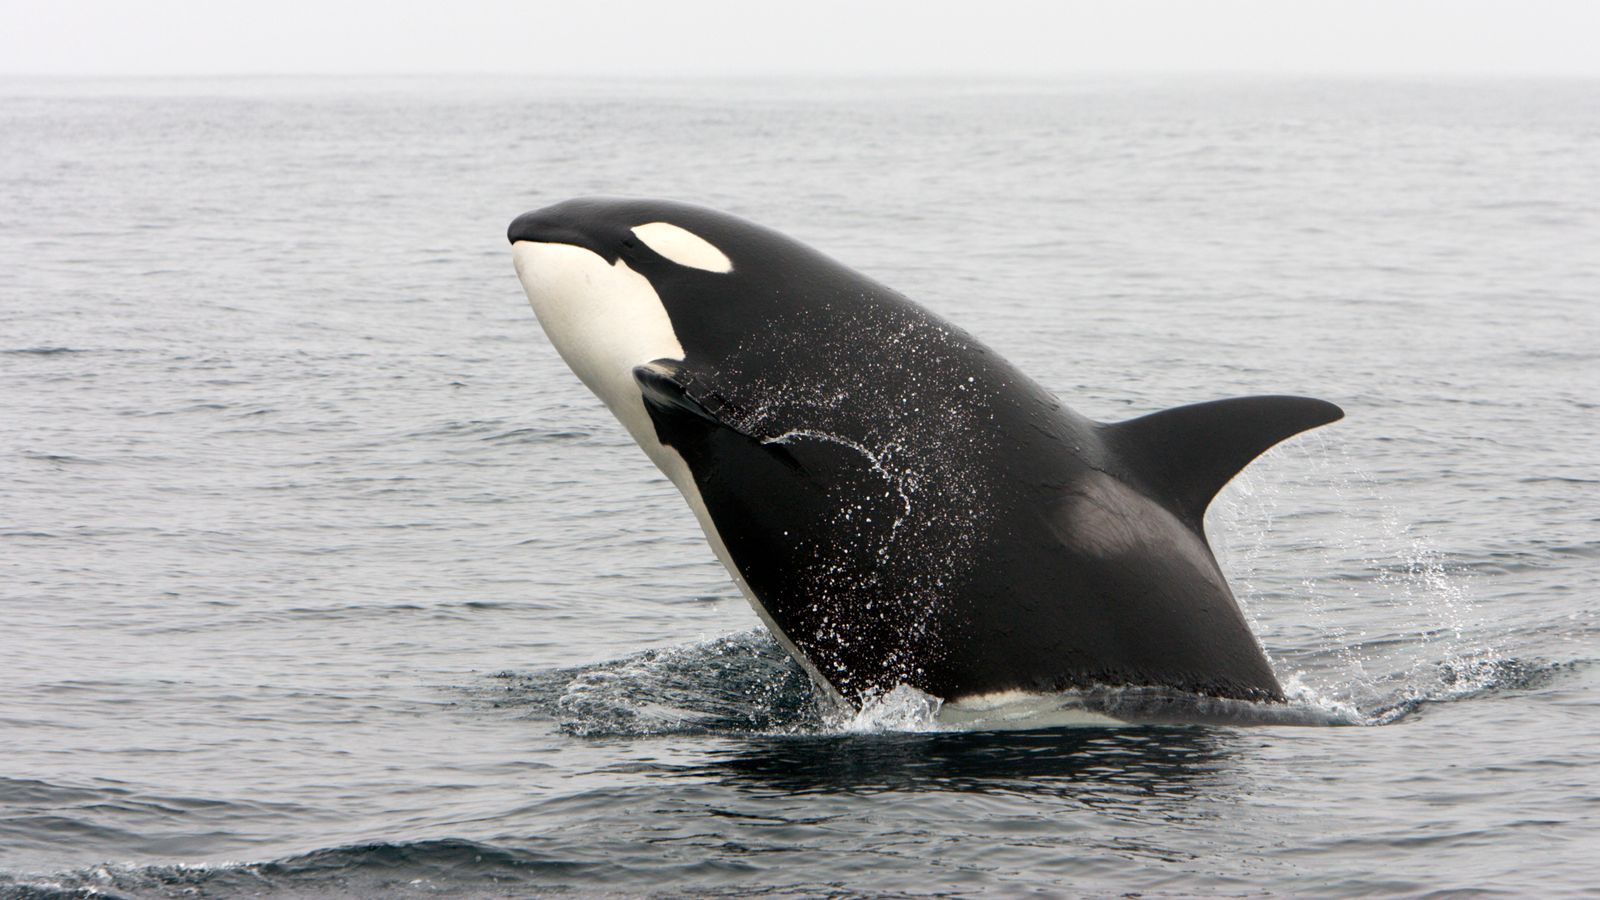 Baleias assassinas atacam deliberadamente barcos na costa da Espanha e Portugal |  noticias do mundo